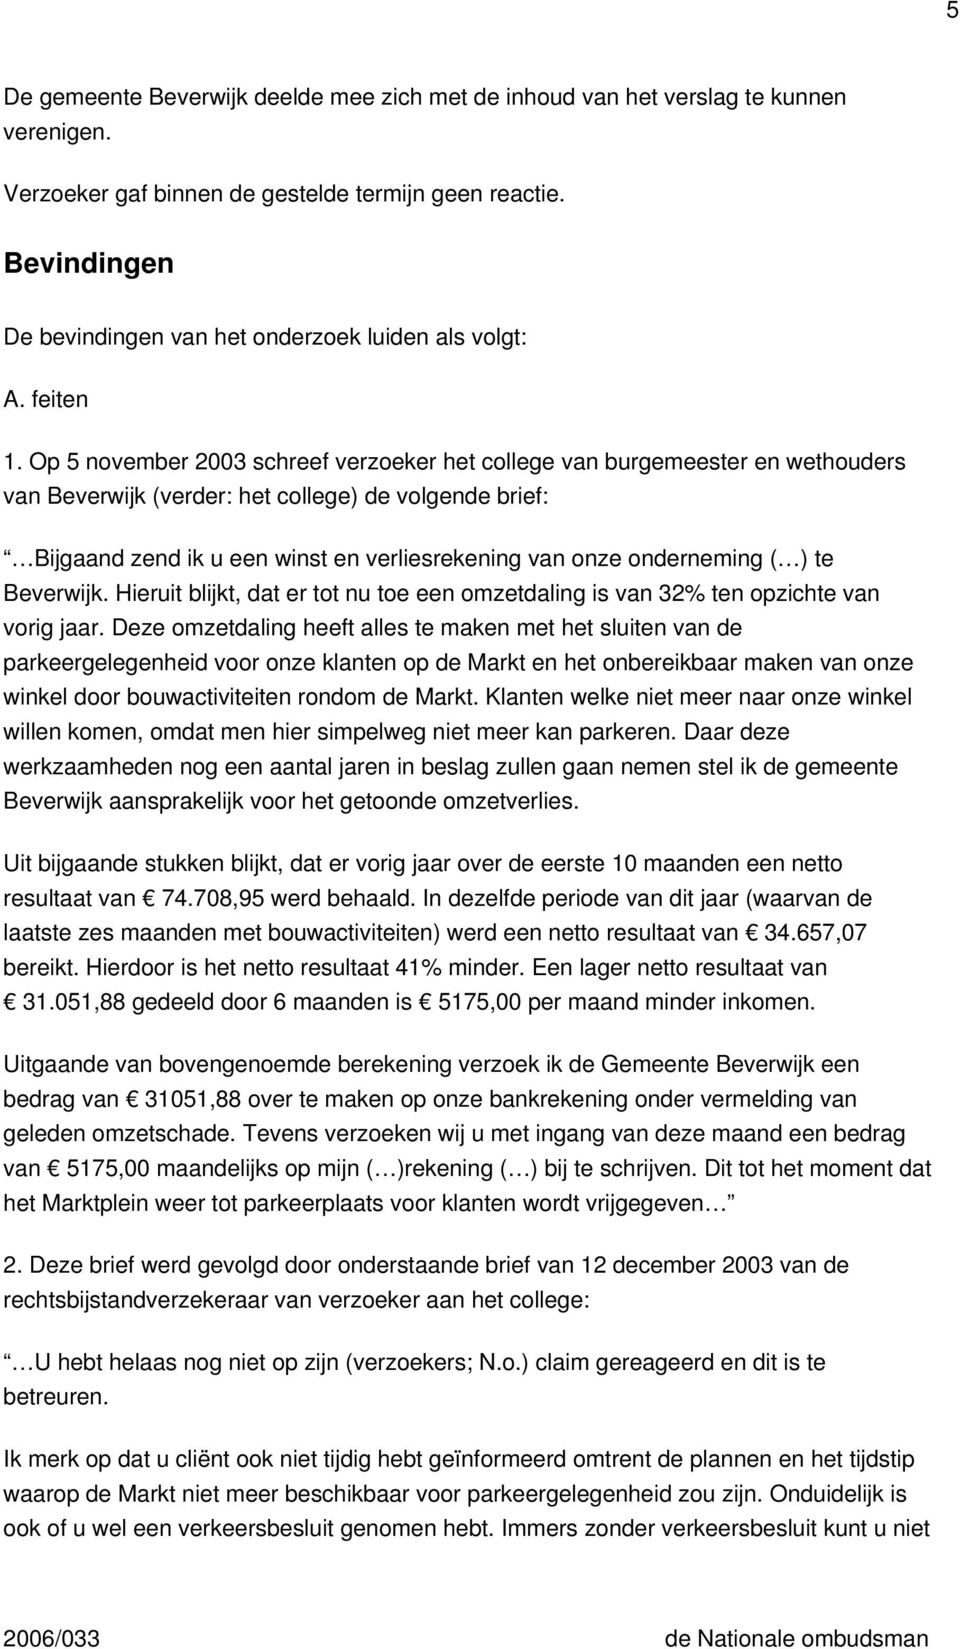 Op 5 november 2003 schreef verzoeker het college van burgemeester en wethouders van Beverwijk (verder: het college) de volgende brief: Bijgaand zend ik u een winst en verliesrekening van onze